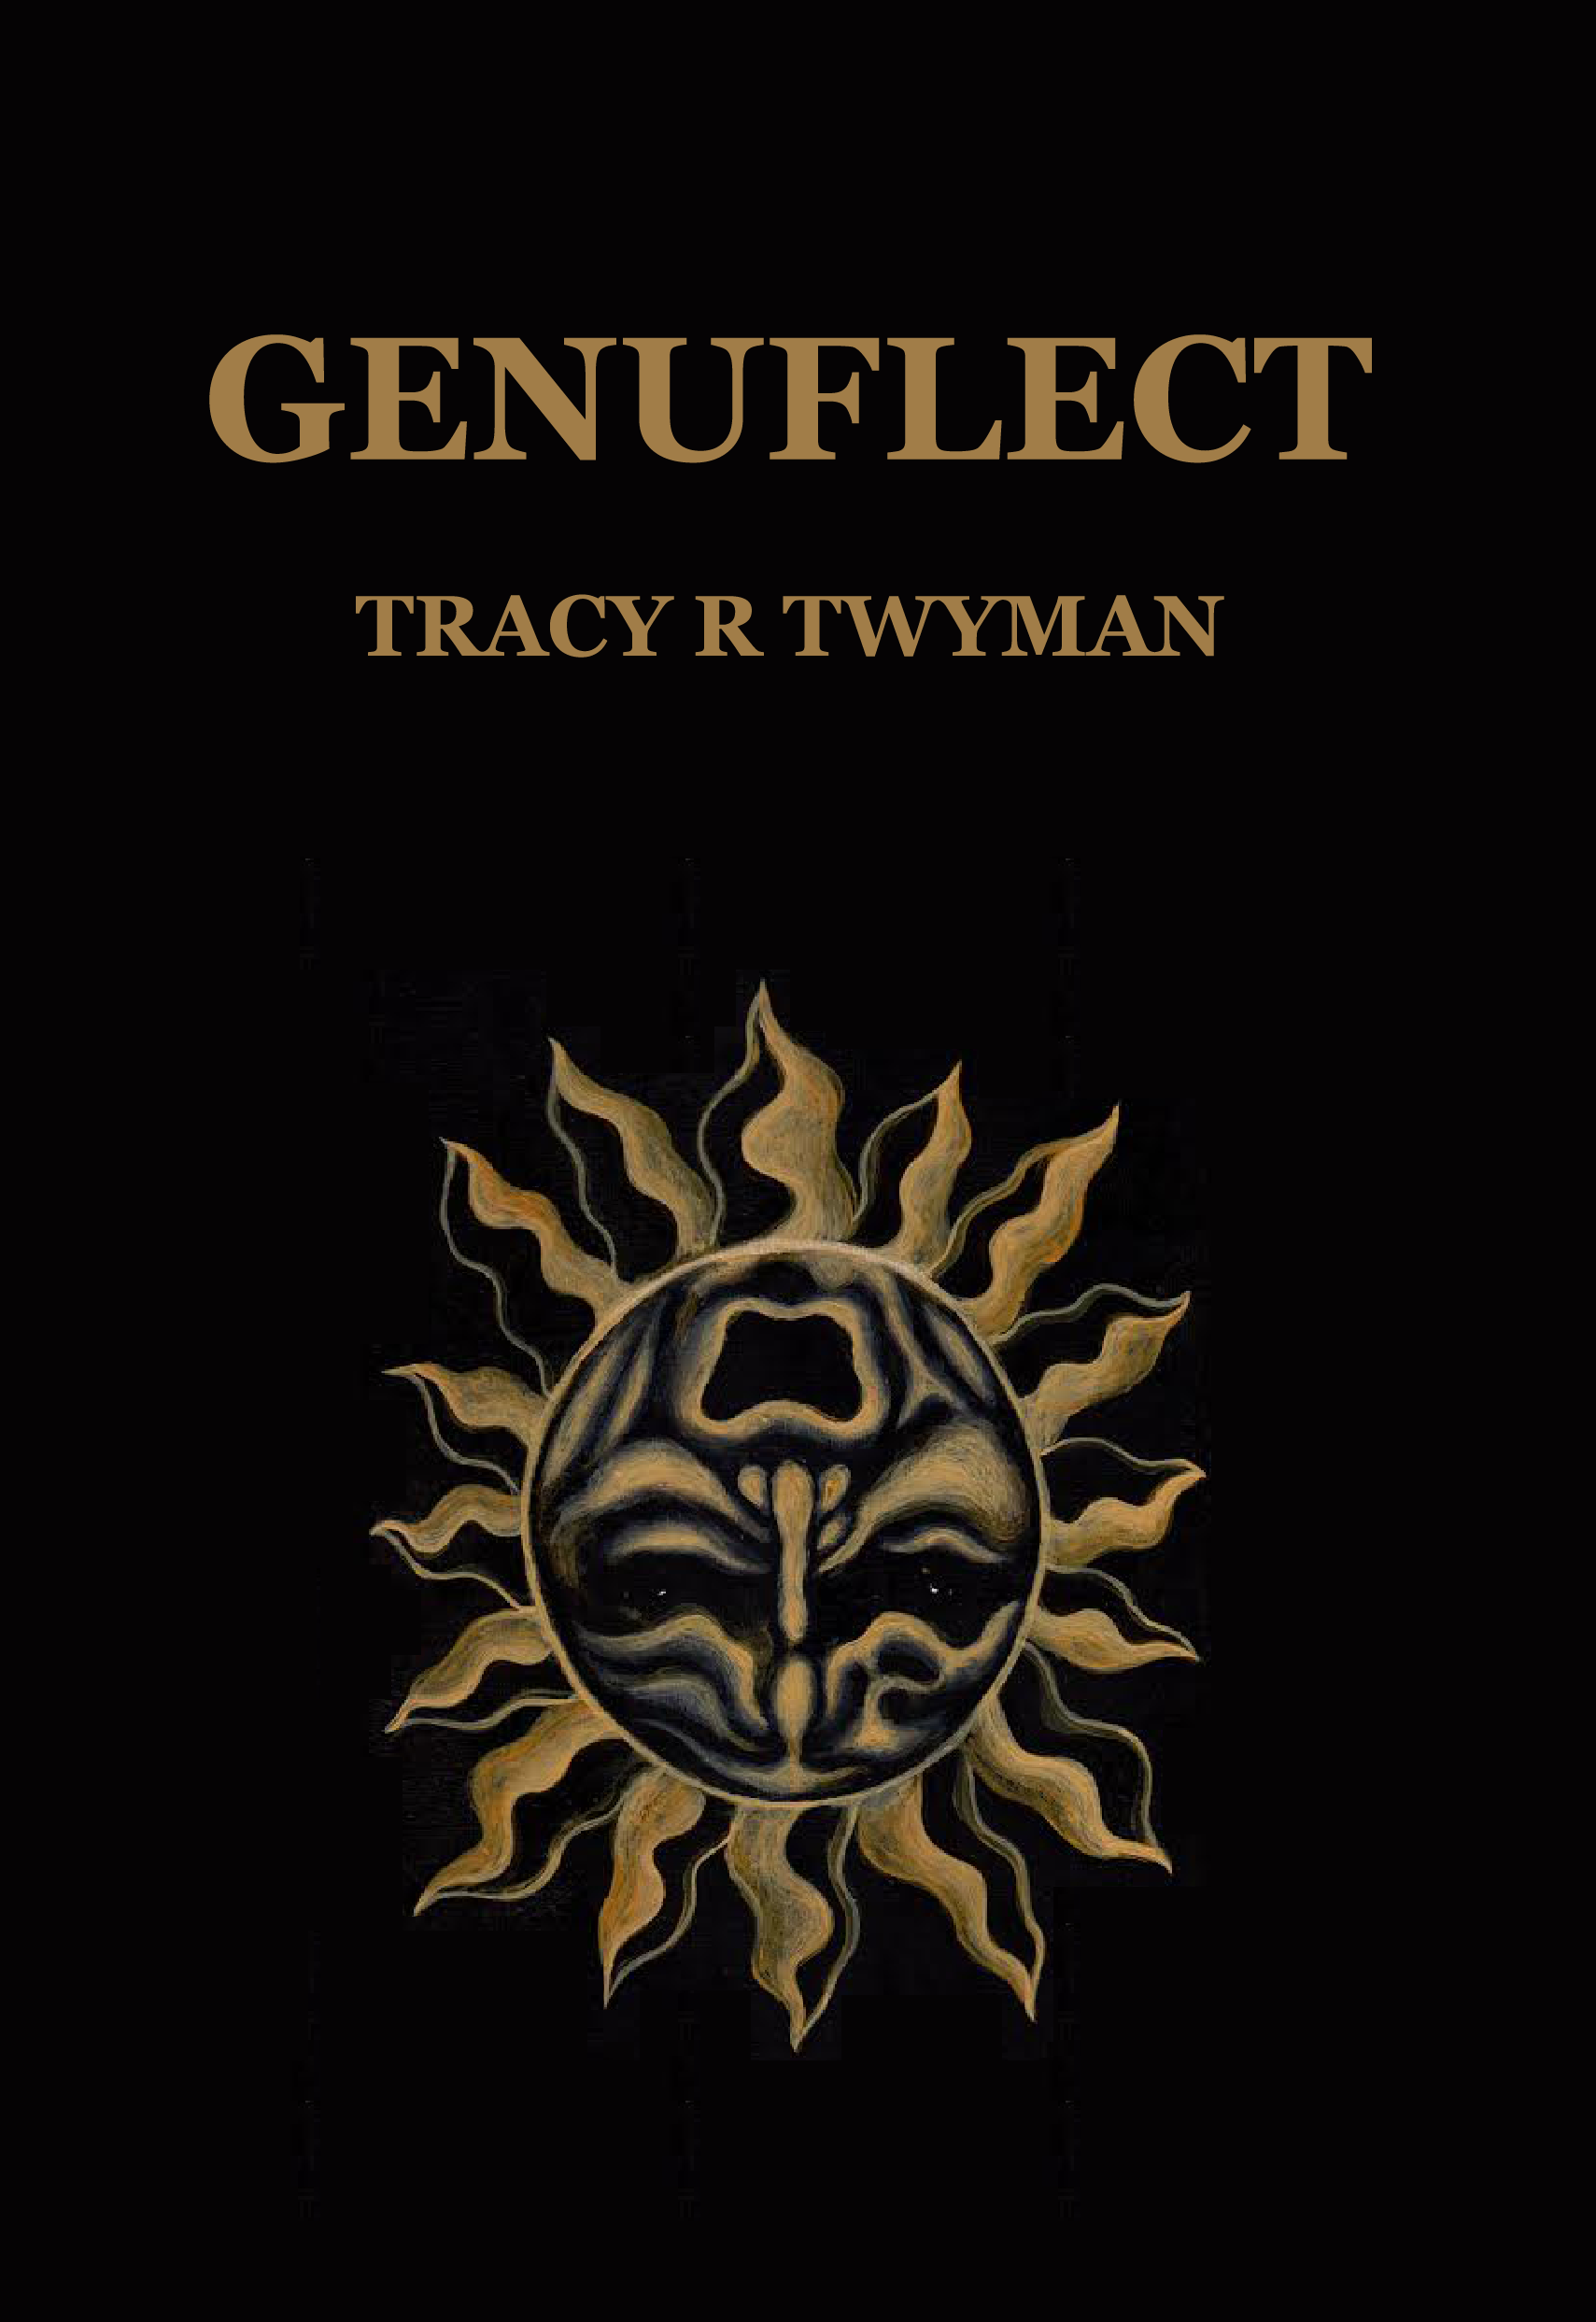 Tracy Twyman's Genuflect